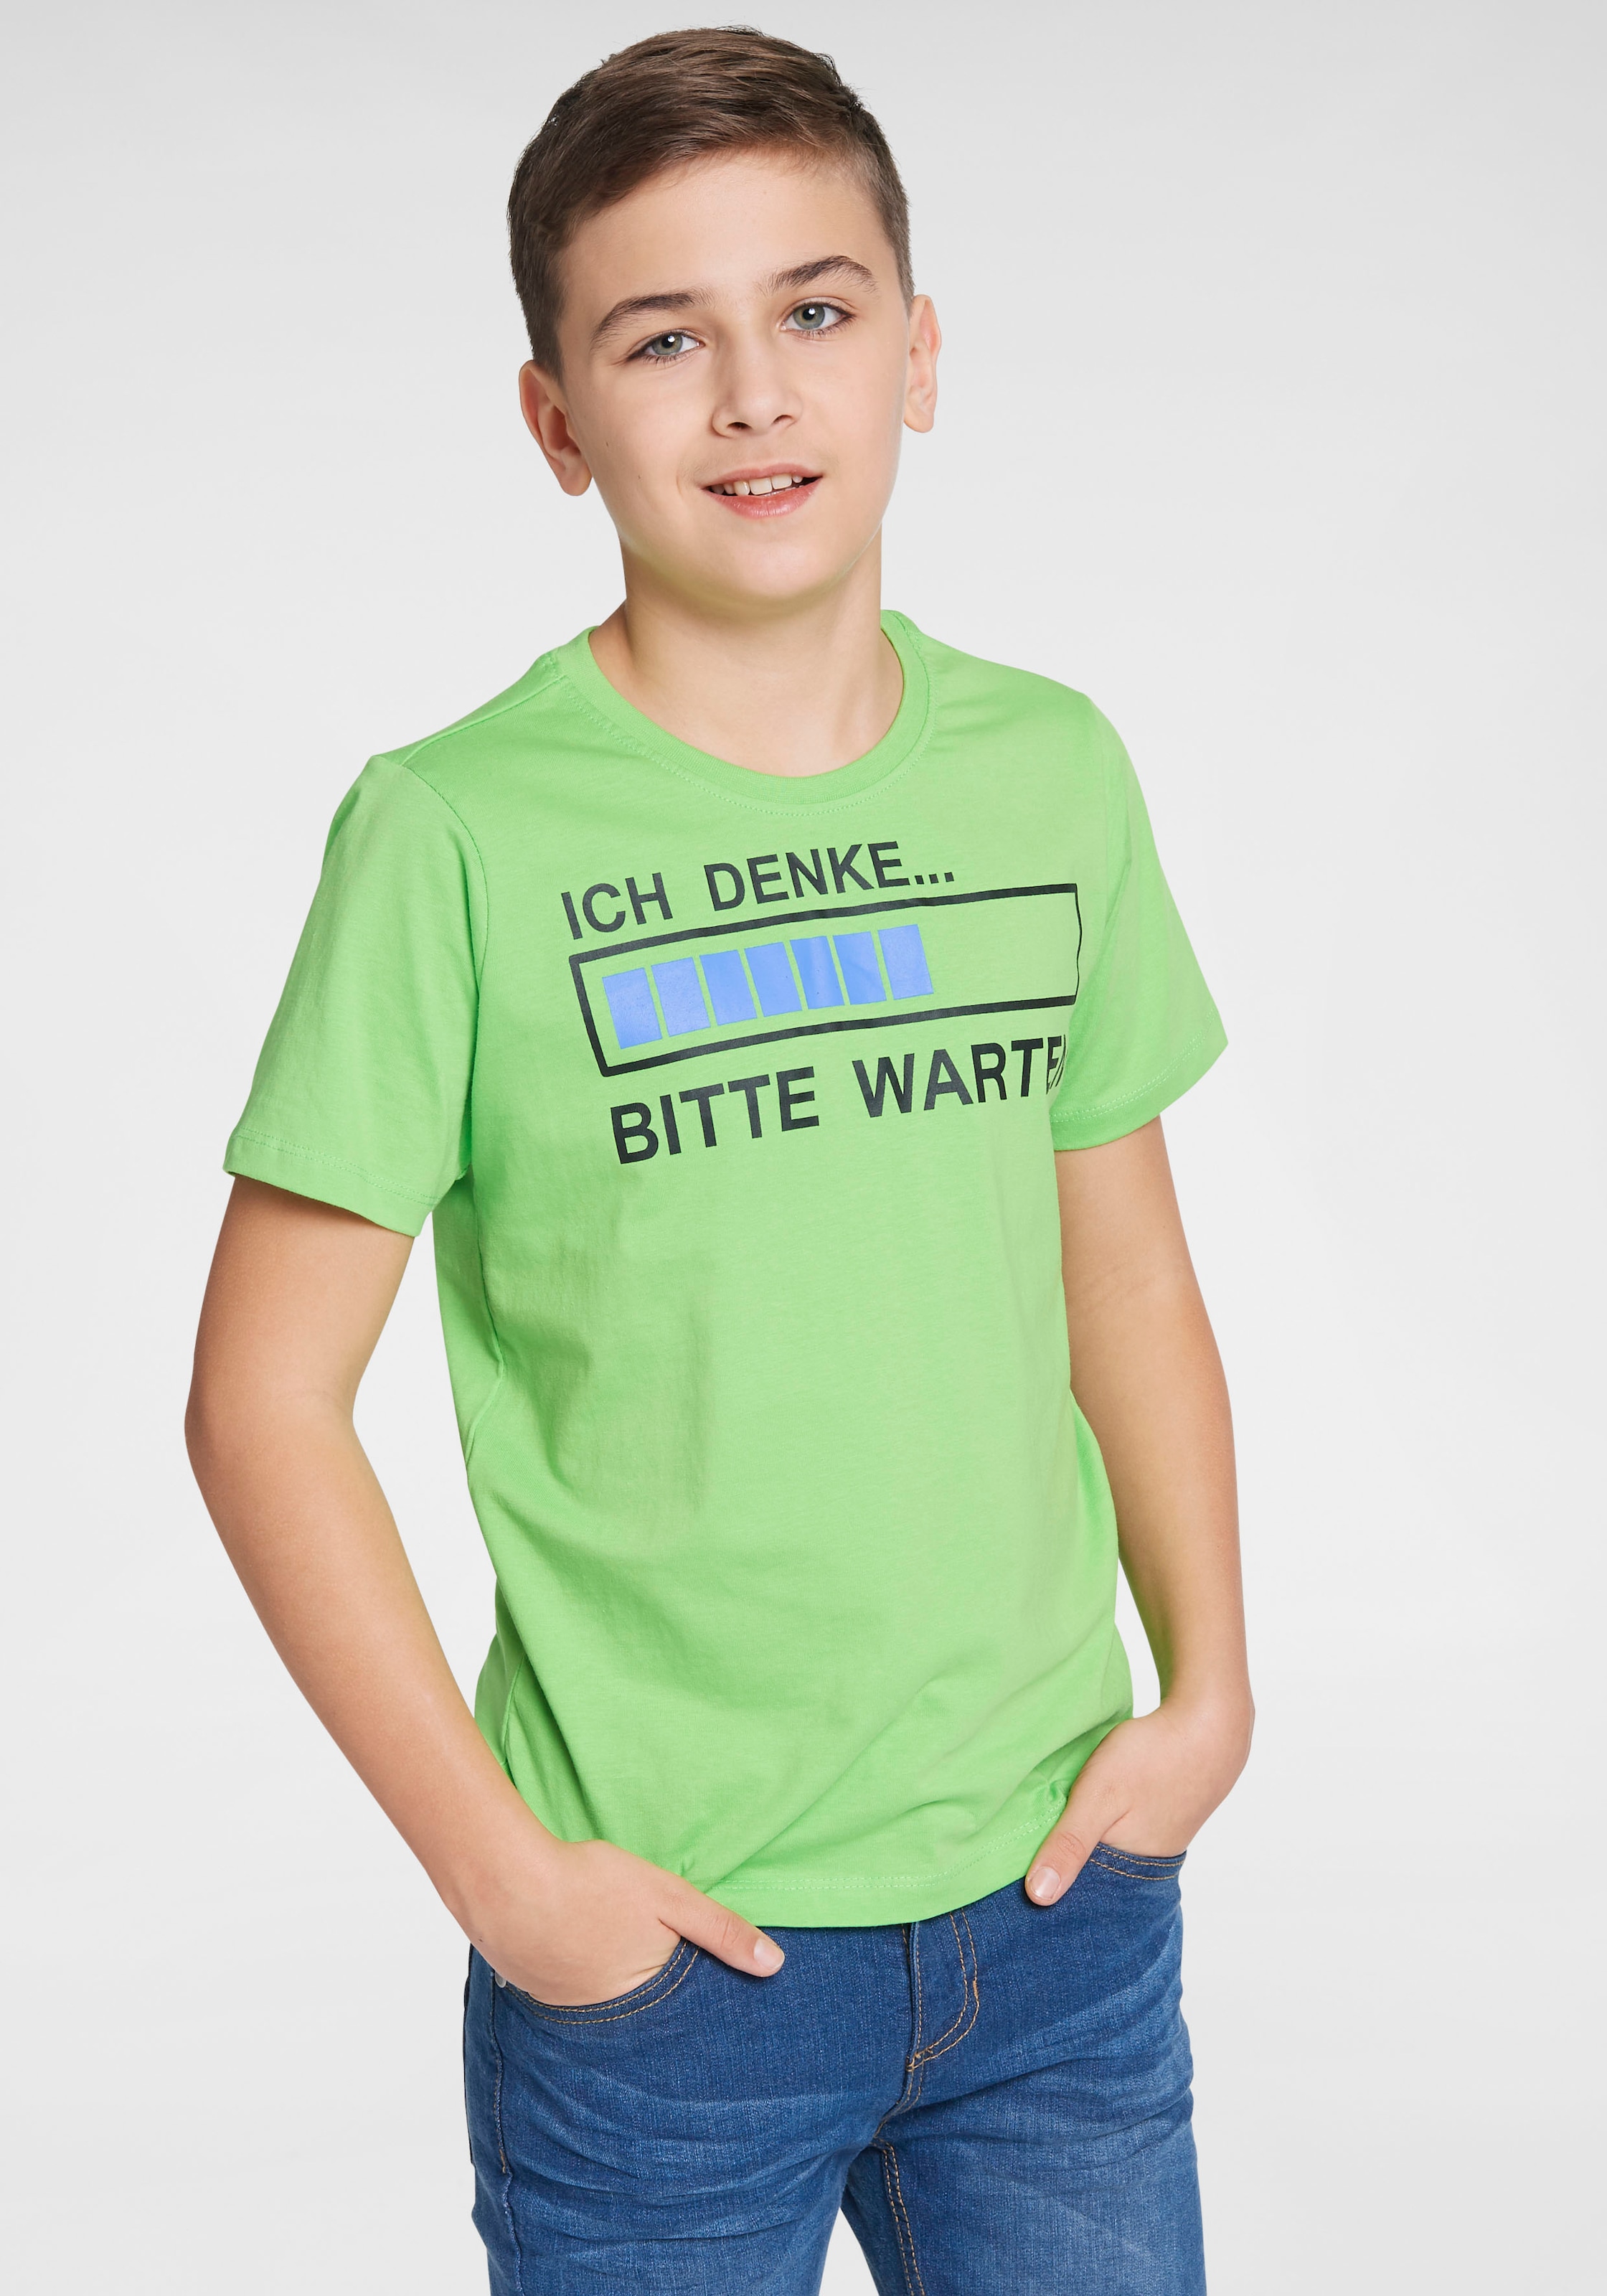 KIDSWORLD T-Shirt »ICH DENKE...BITTE WARTEN«, OTTO bei Spruch